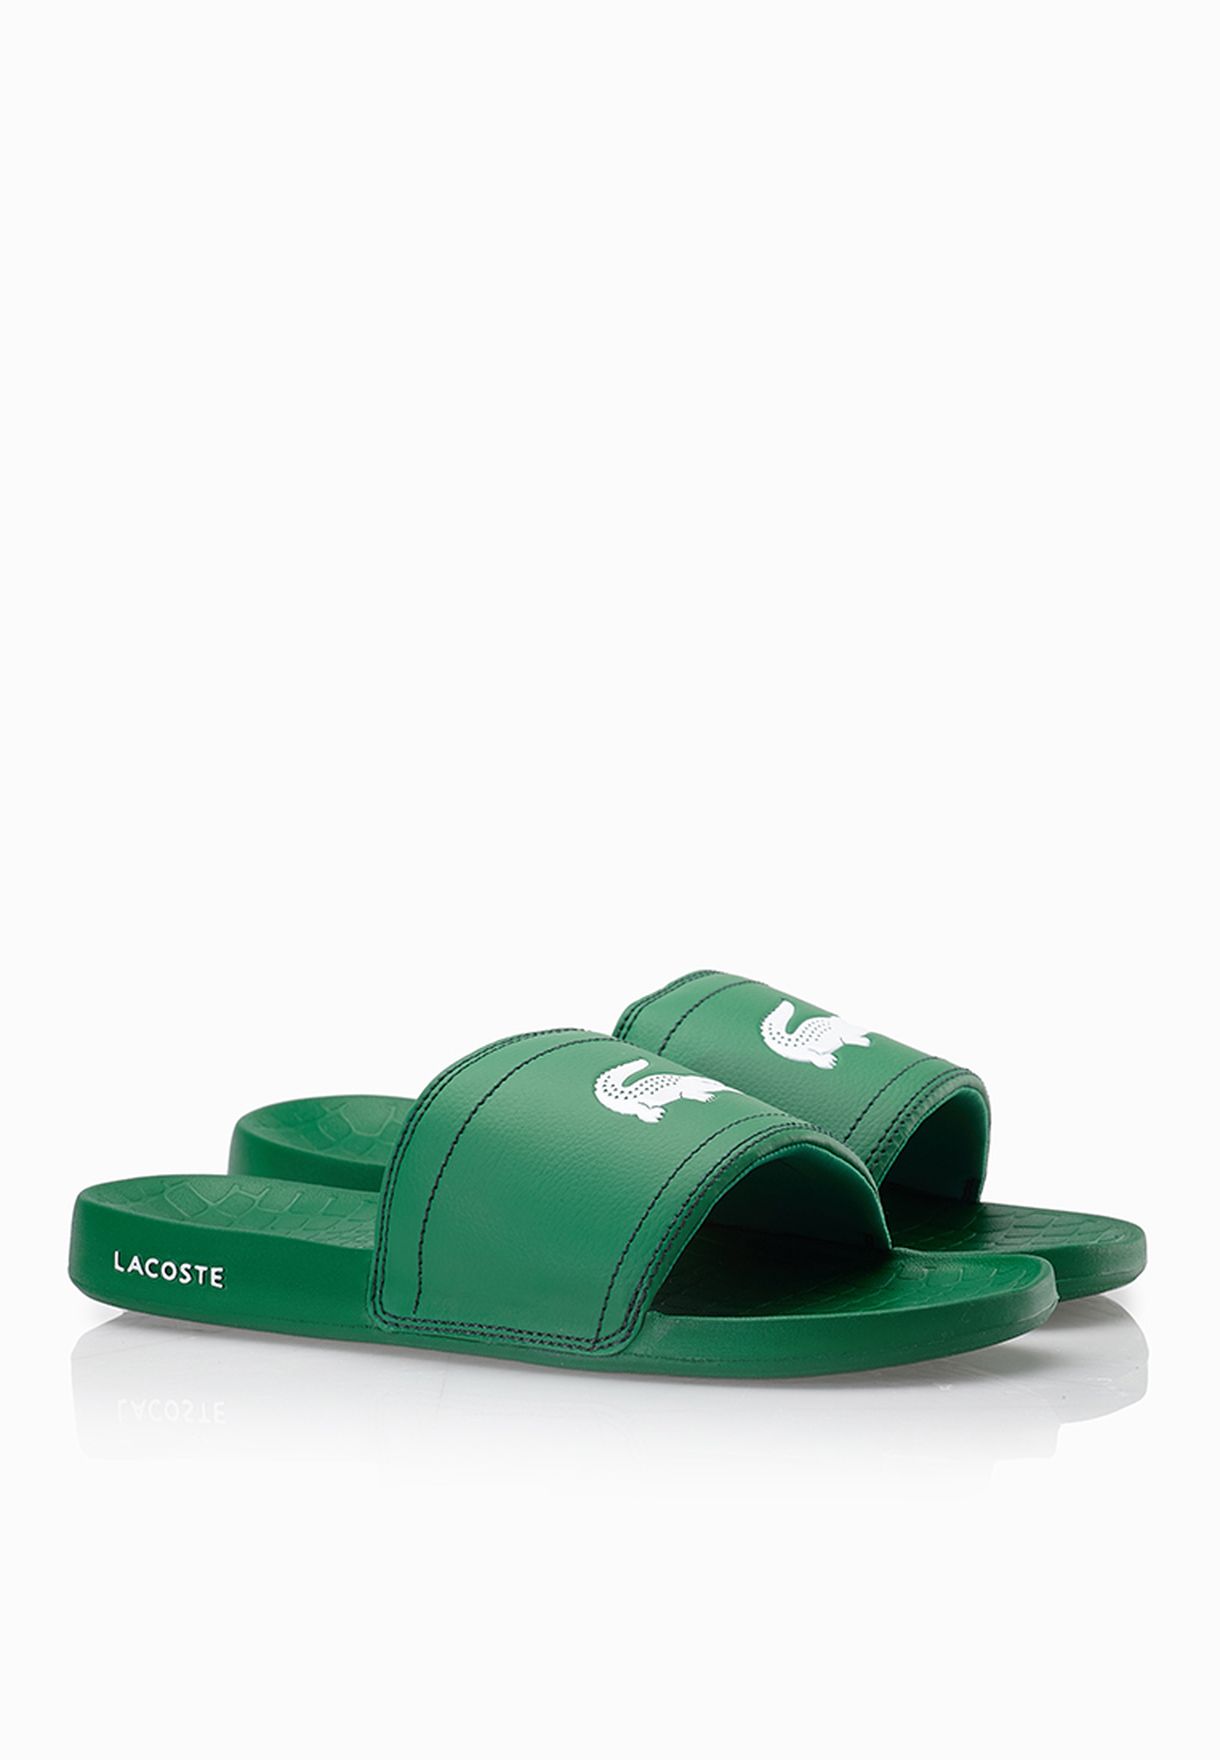 BRAND NEW Lacoste Fraisier BRD1 Green White Men's Sandals Slides Shoes 